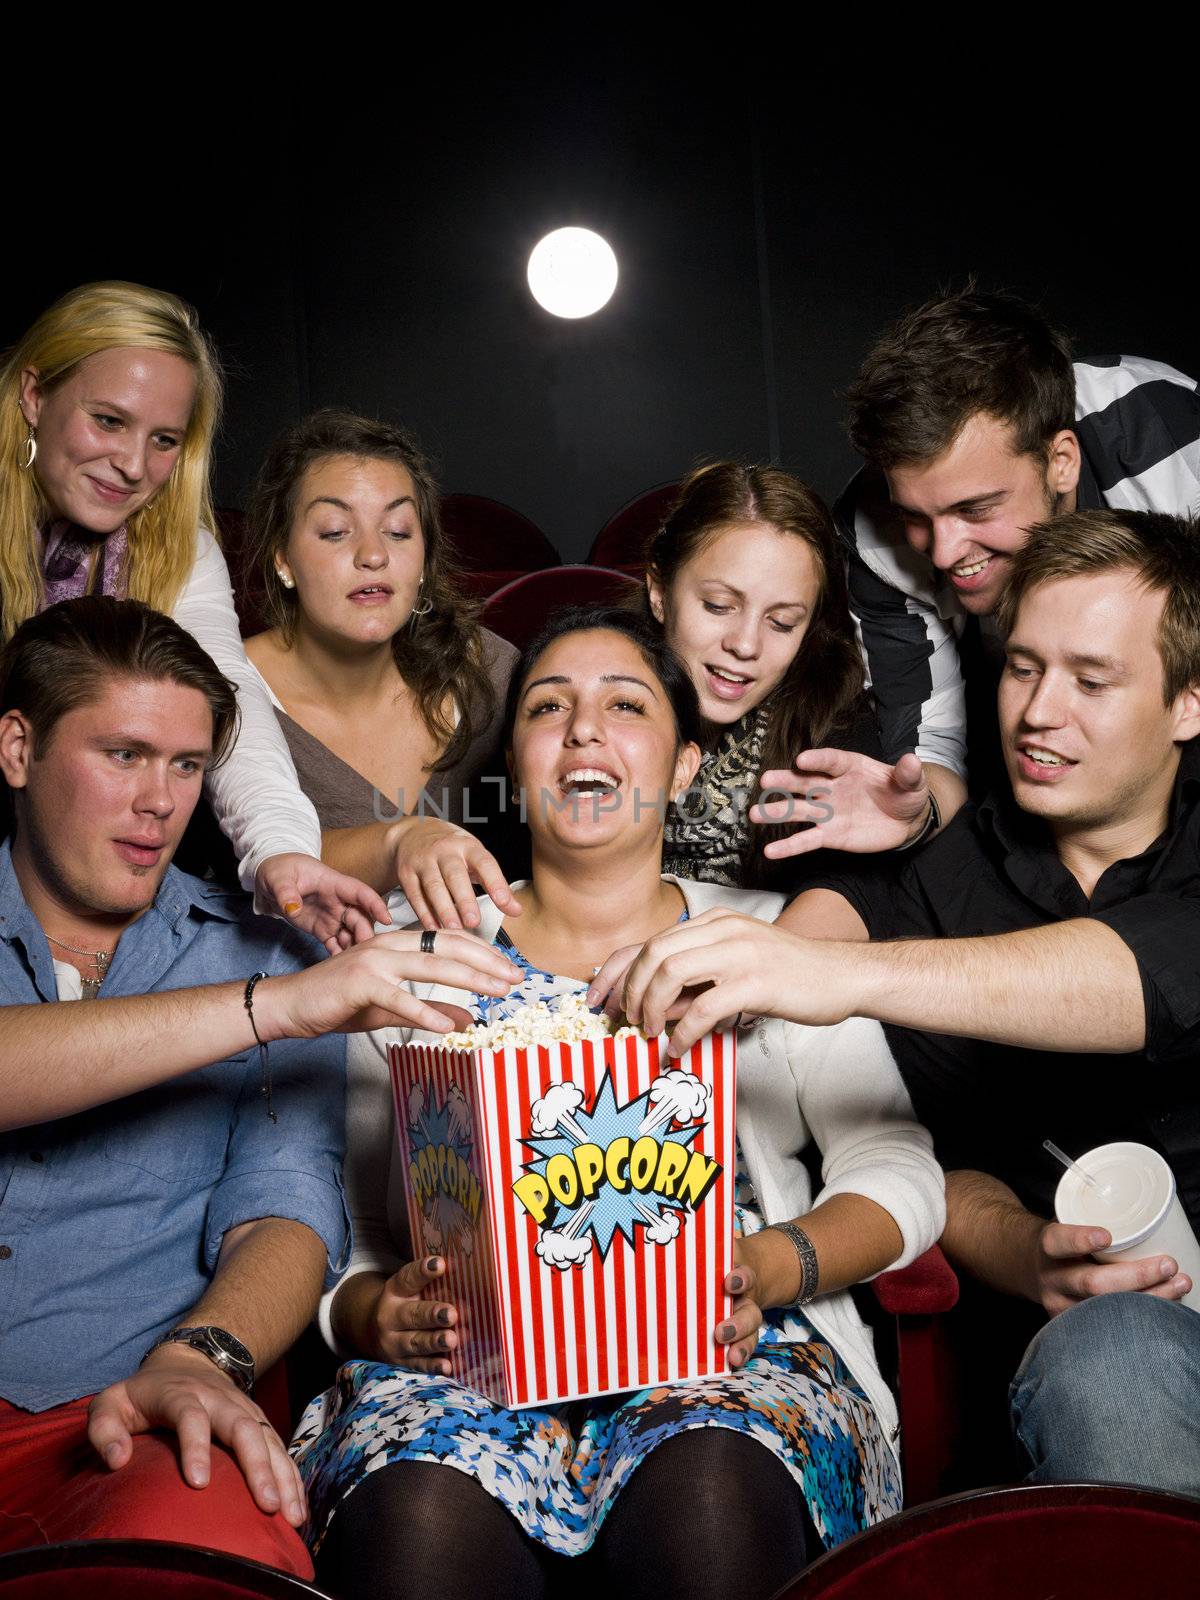 People eating popcorn by gemenacom